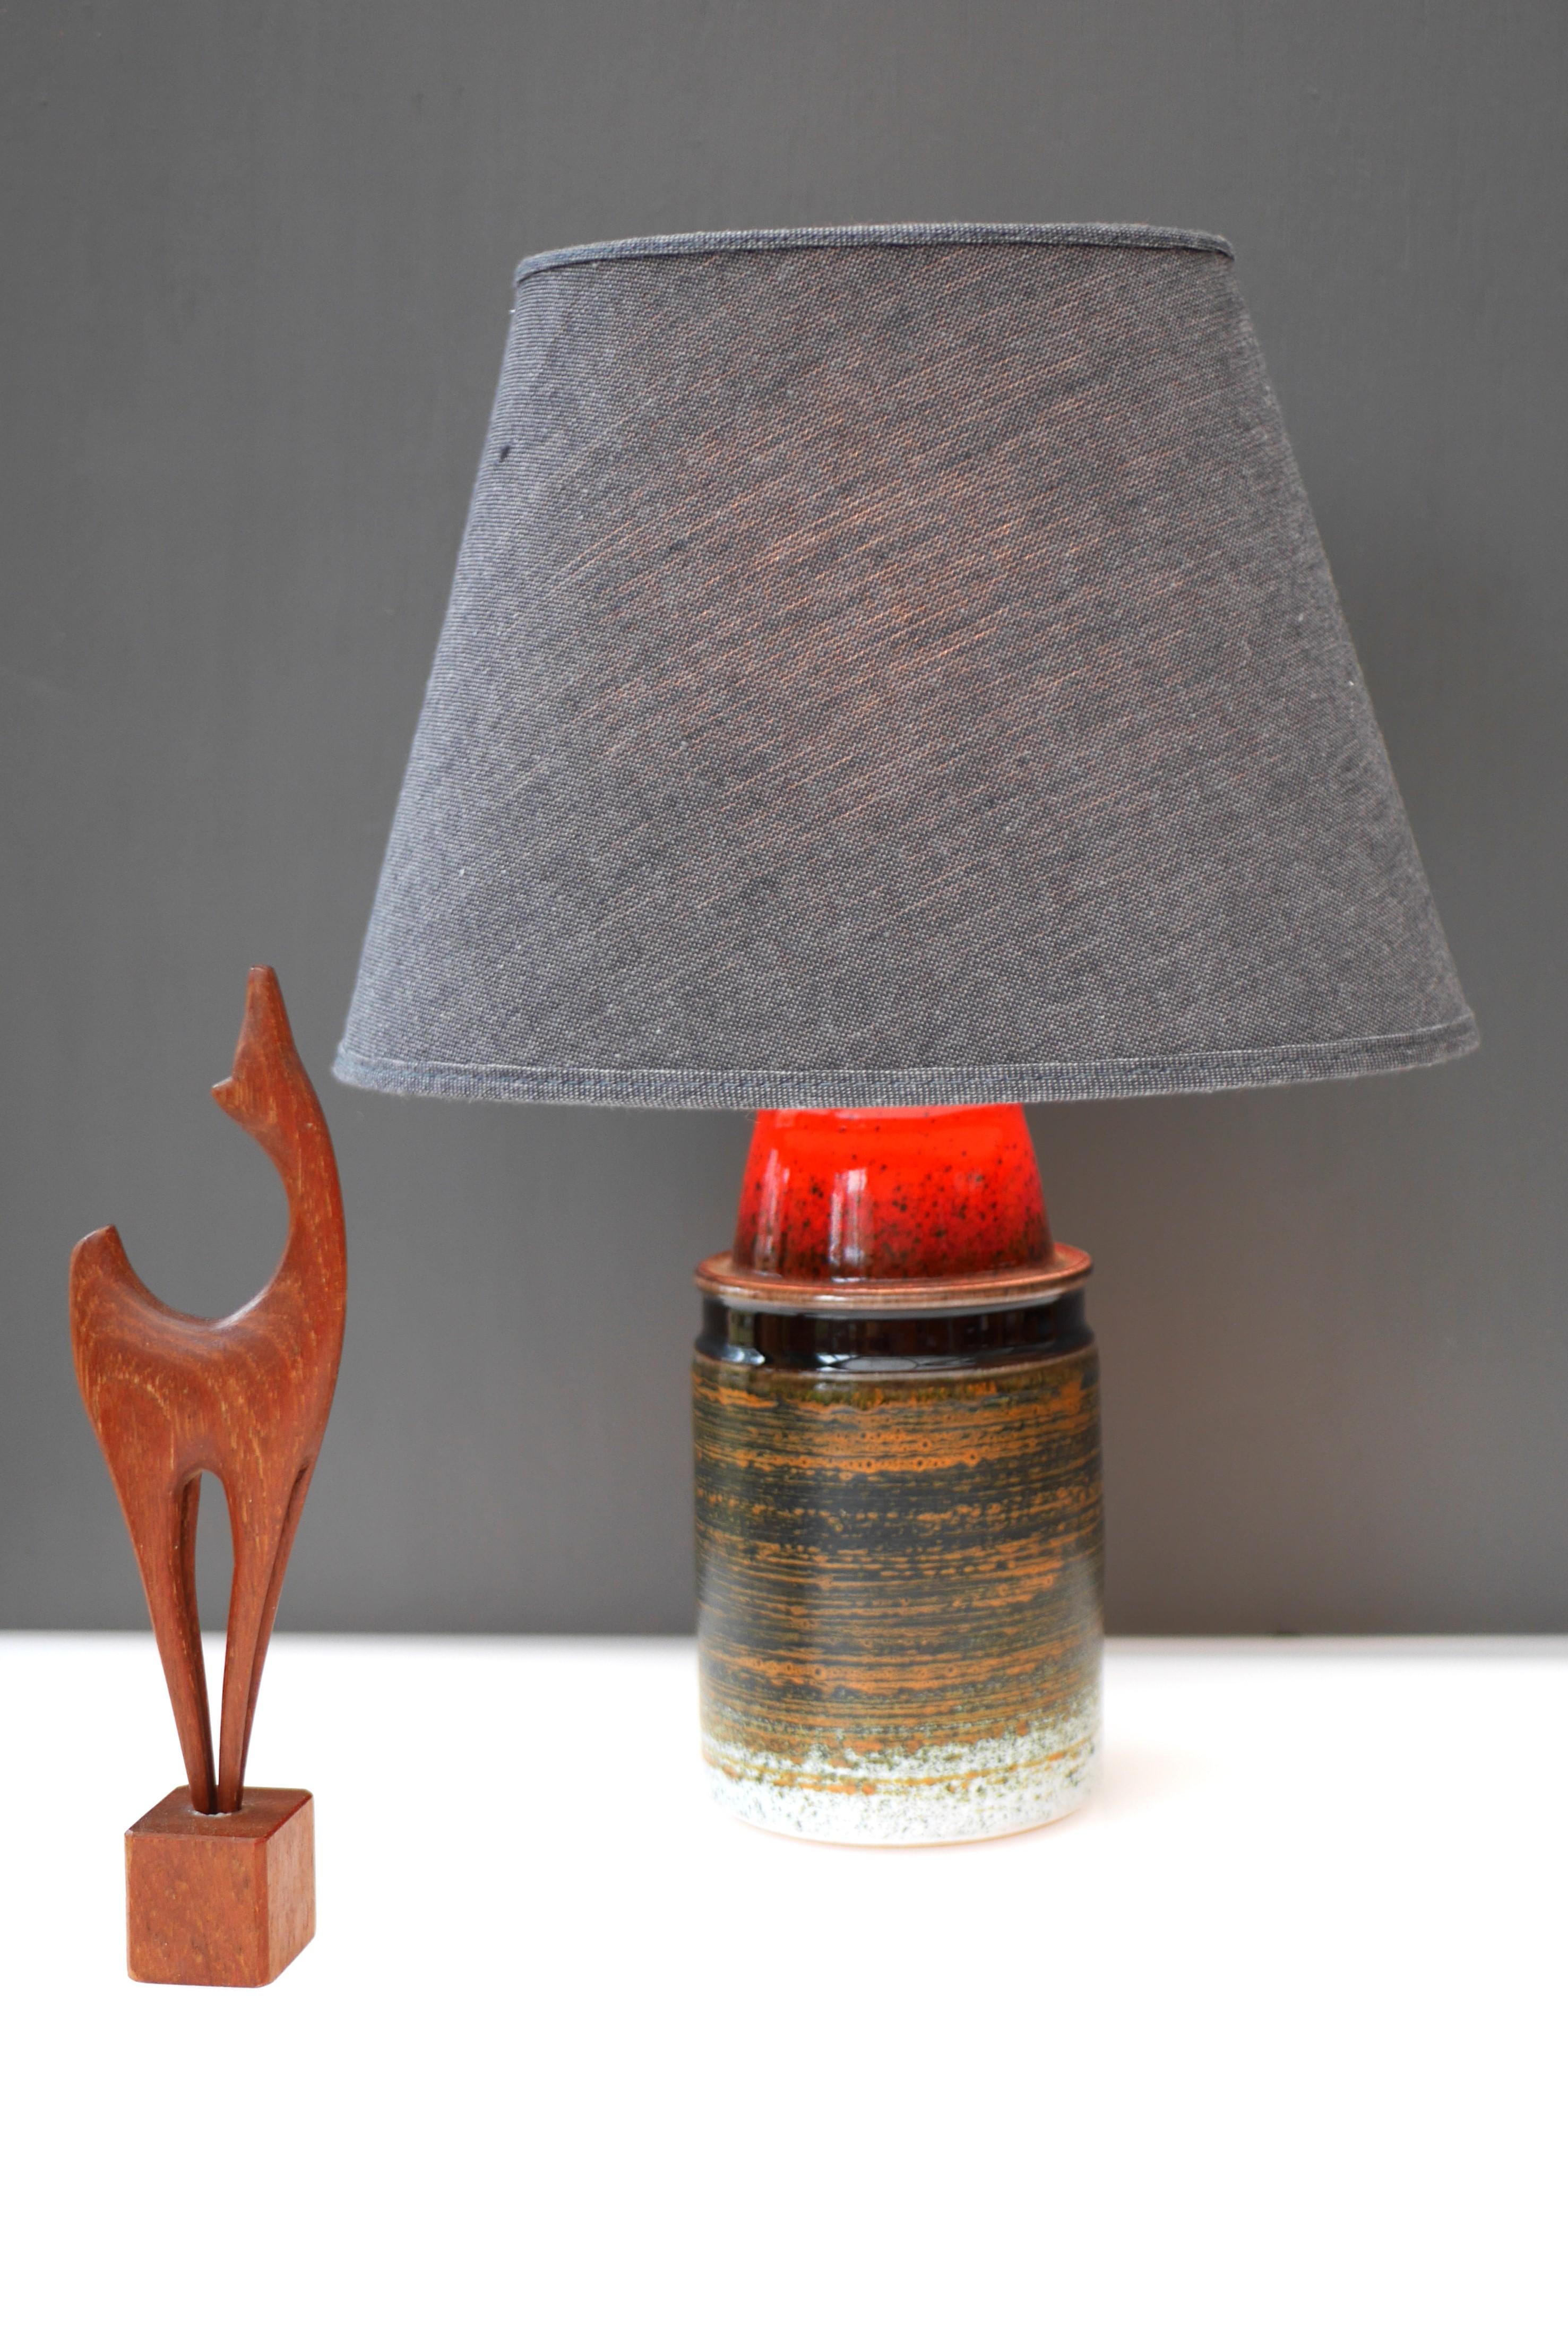 Une base de lampe en céramique très spéciale de Tilgmans, Suède. Cette lampe est très typique de son style en ce qui concerne les motifs et les glaçures des années 1970. Le design est simple et honnête, mais c'est le vitrage et les couleurs qui le